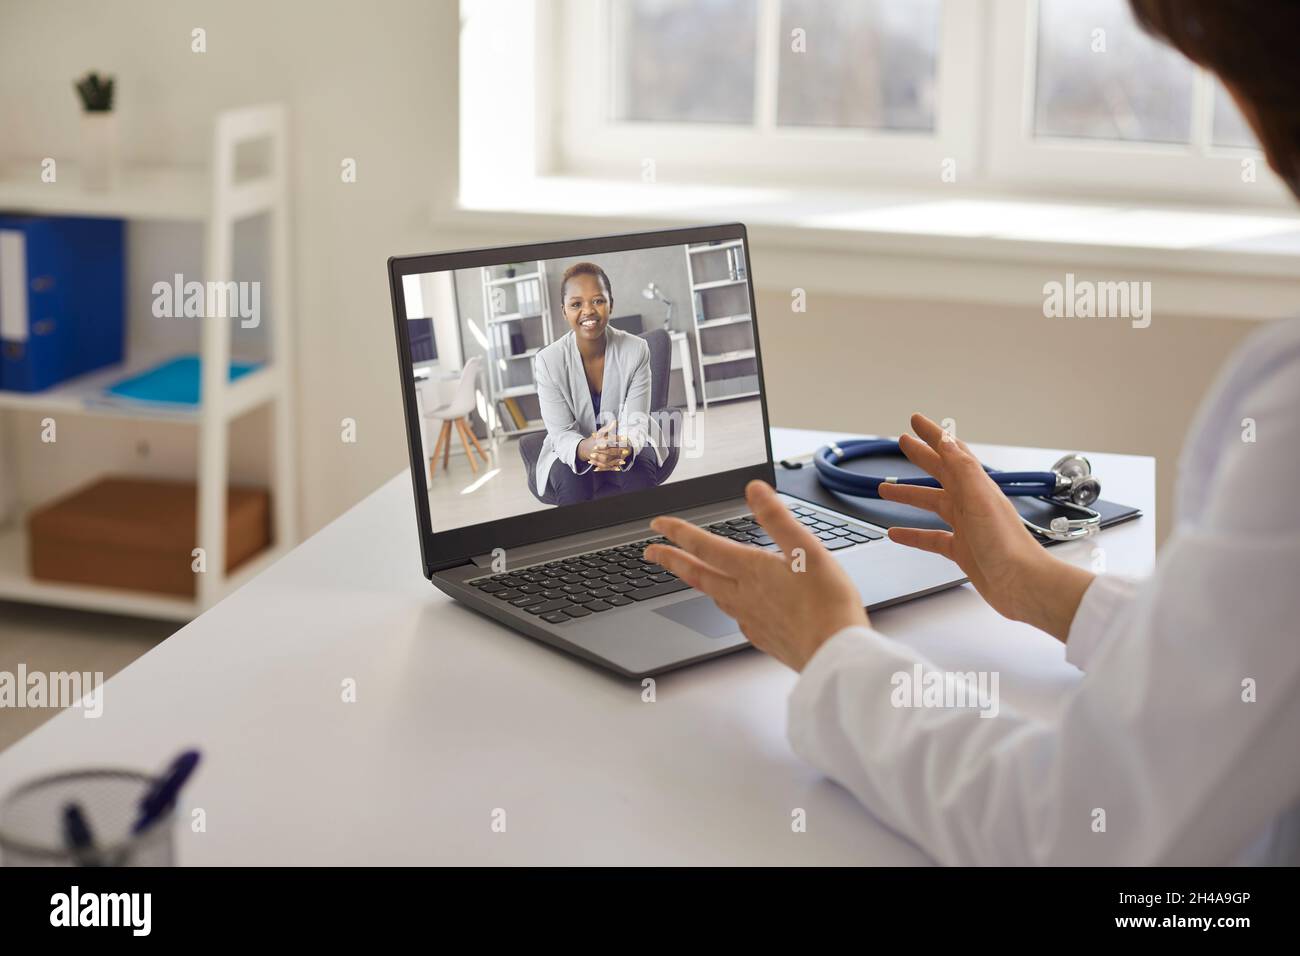 Médecin professionnel donnant une consultation en ligne au patient par appel vidéo sur ordinateur portable Banque D'Images